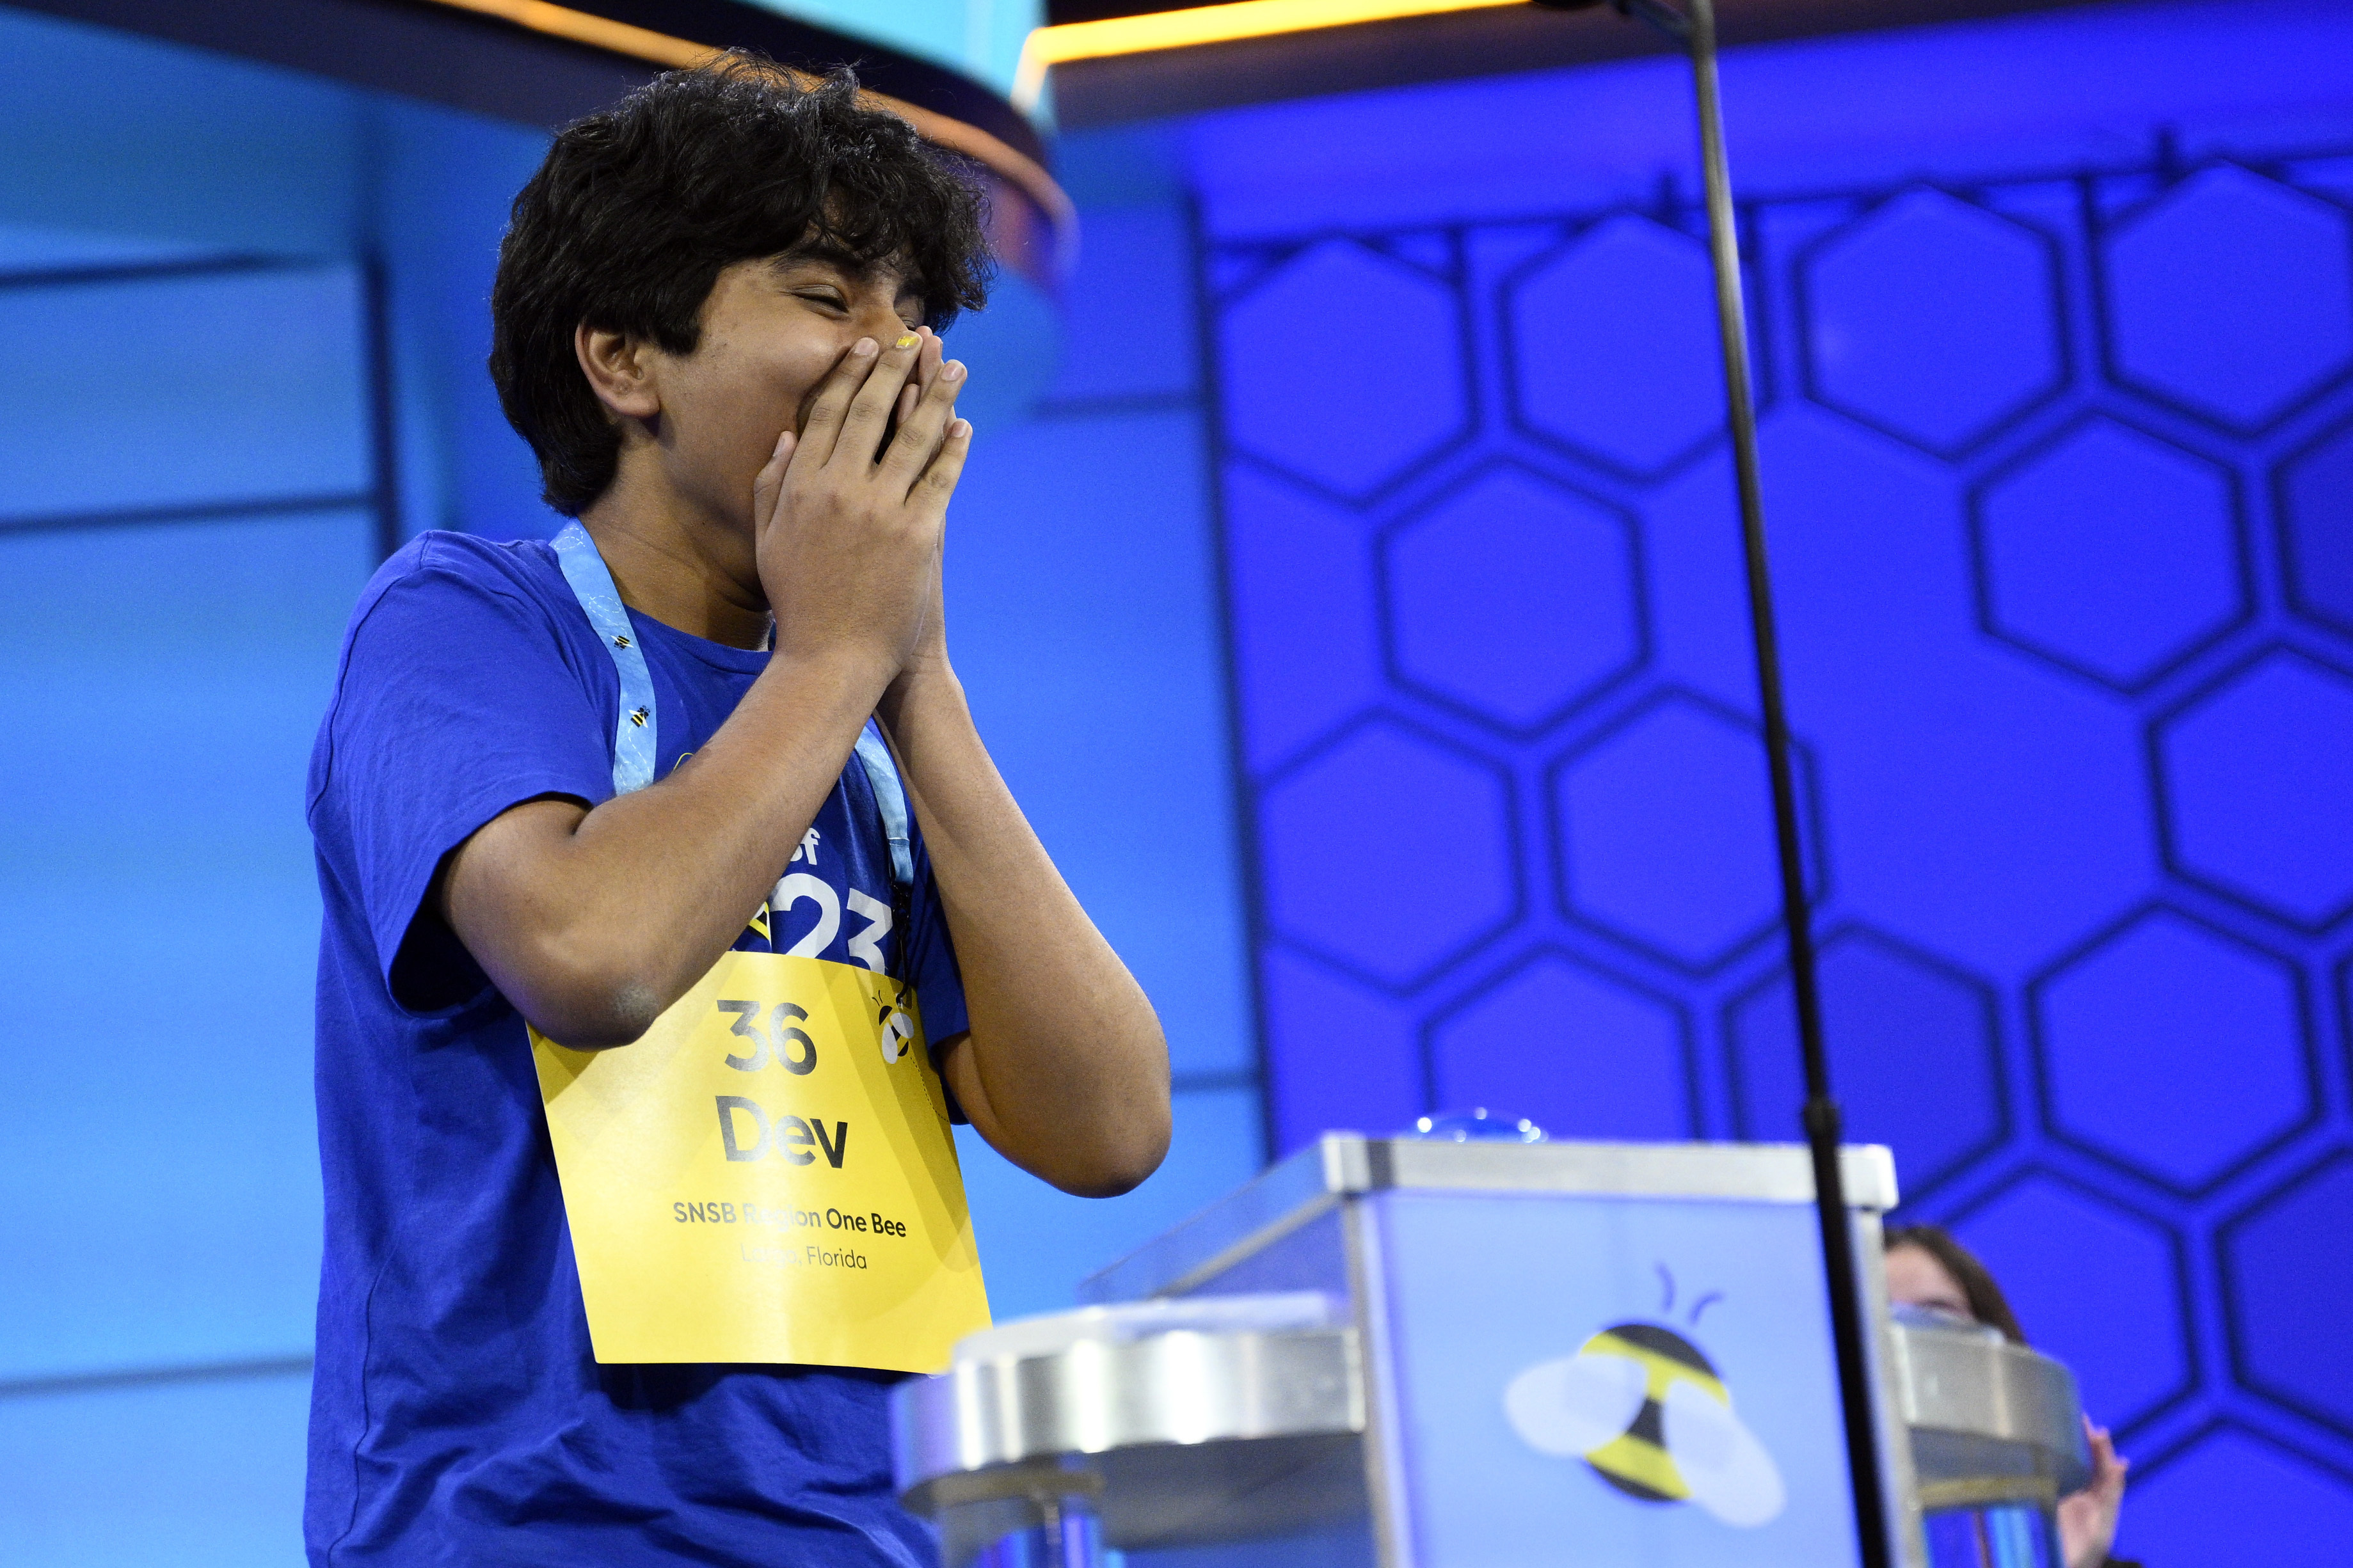 El campeón nacional de ortografía, Dev Shah, pasa de estar "desanimado" a absorber el momento